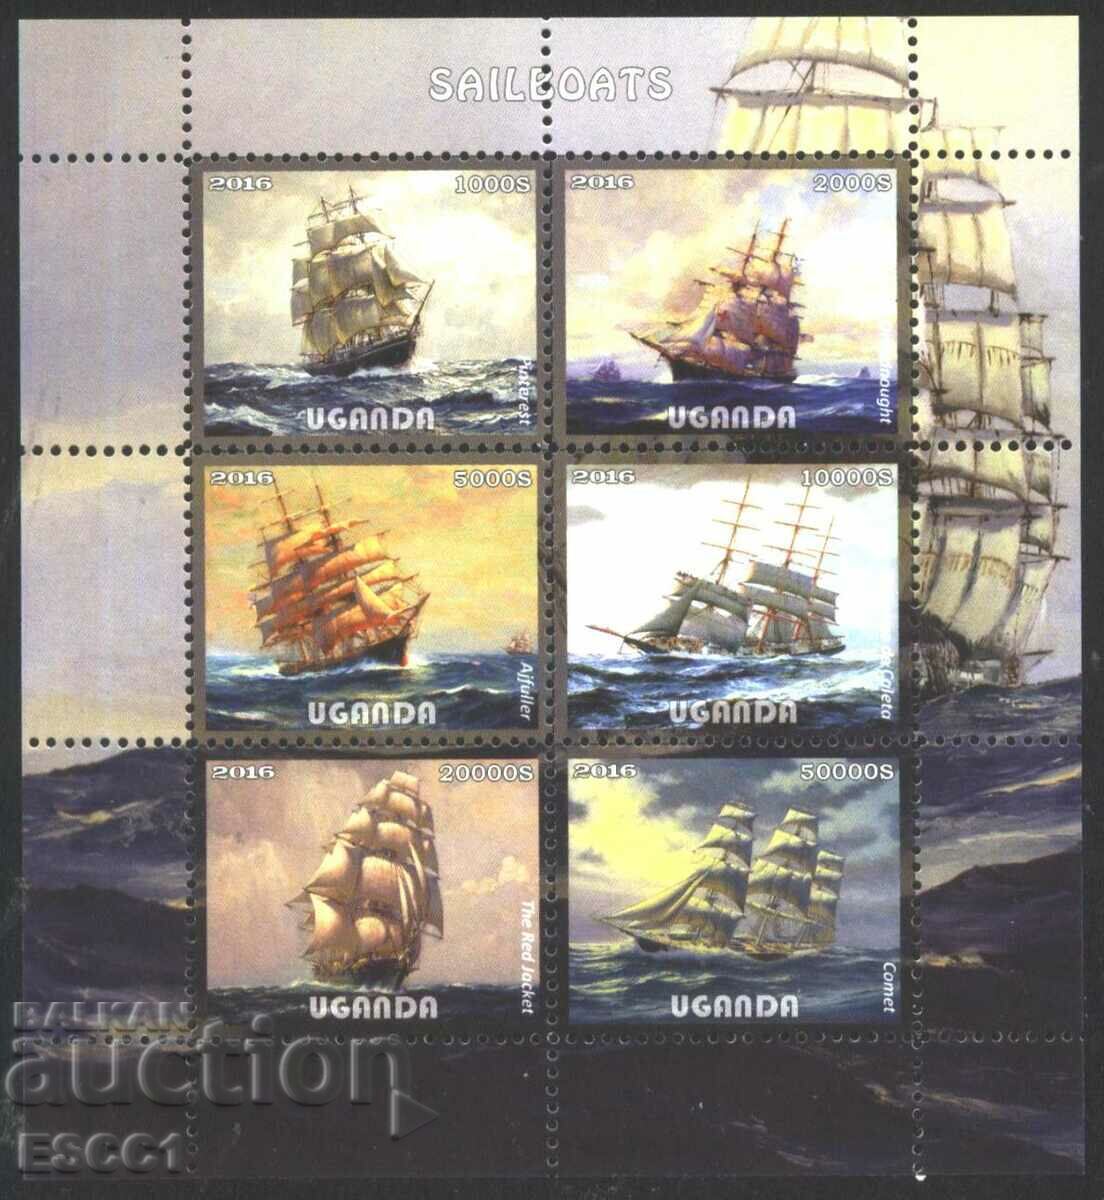 Καθαρά γραμματόσημα σε μικρό φύλλο Ships Sailboats 2016 από την Ουγκάντα